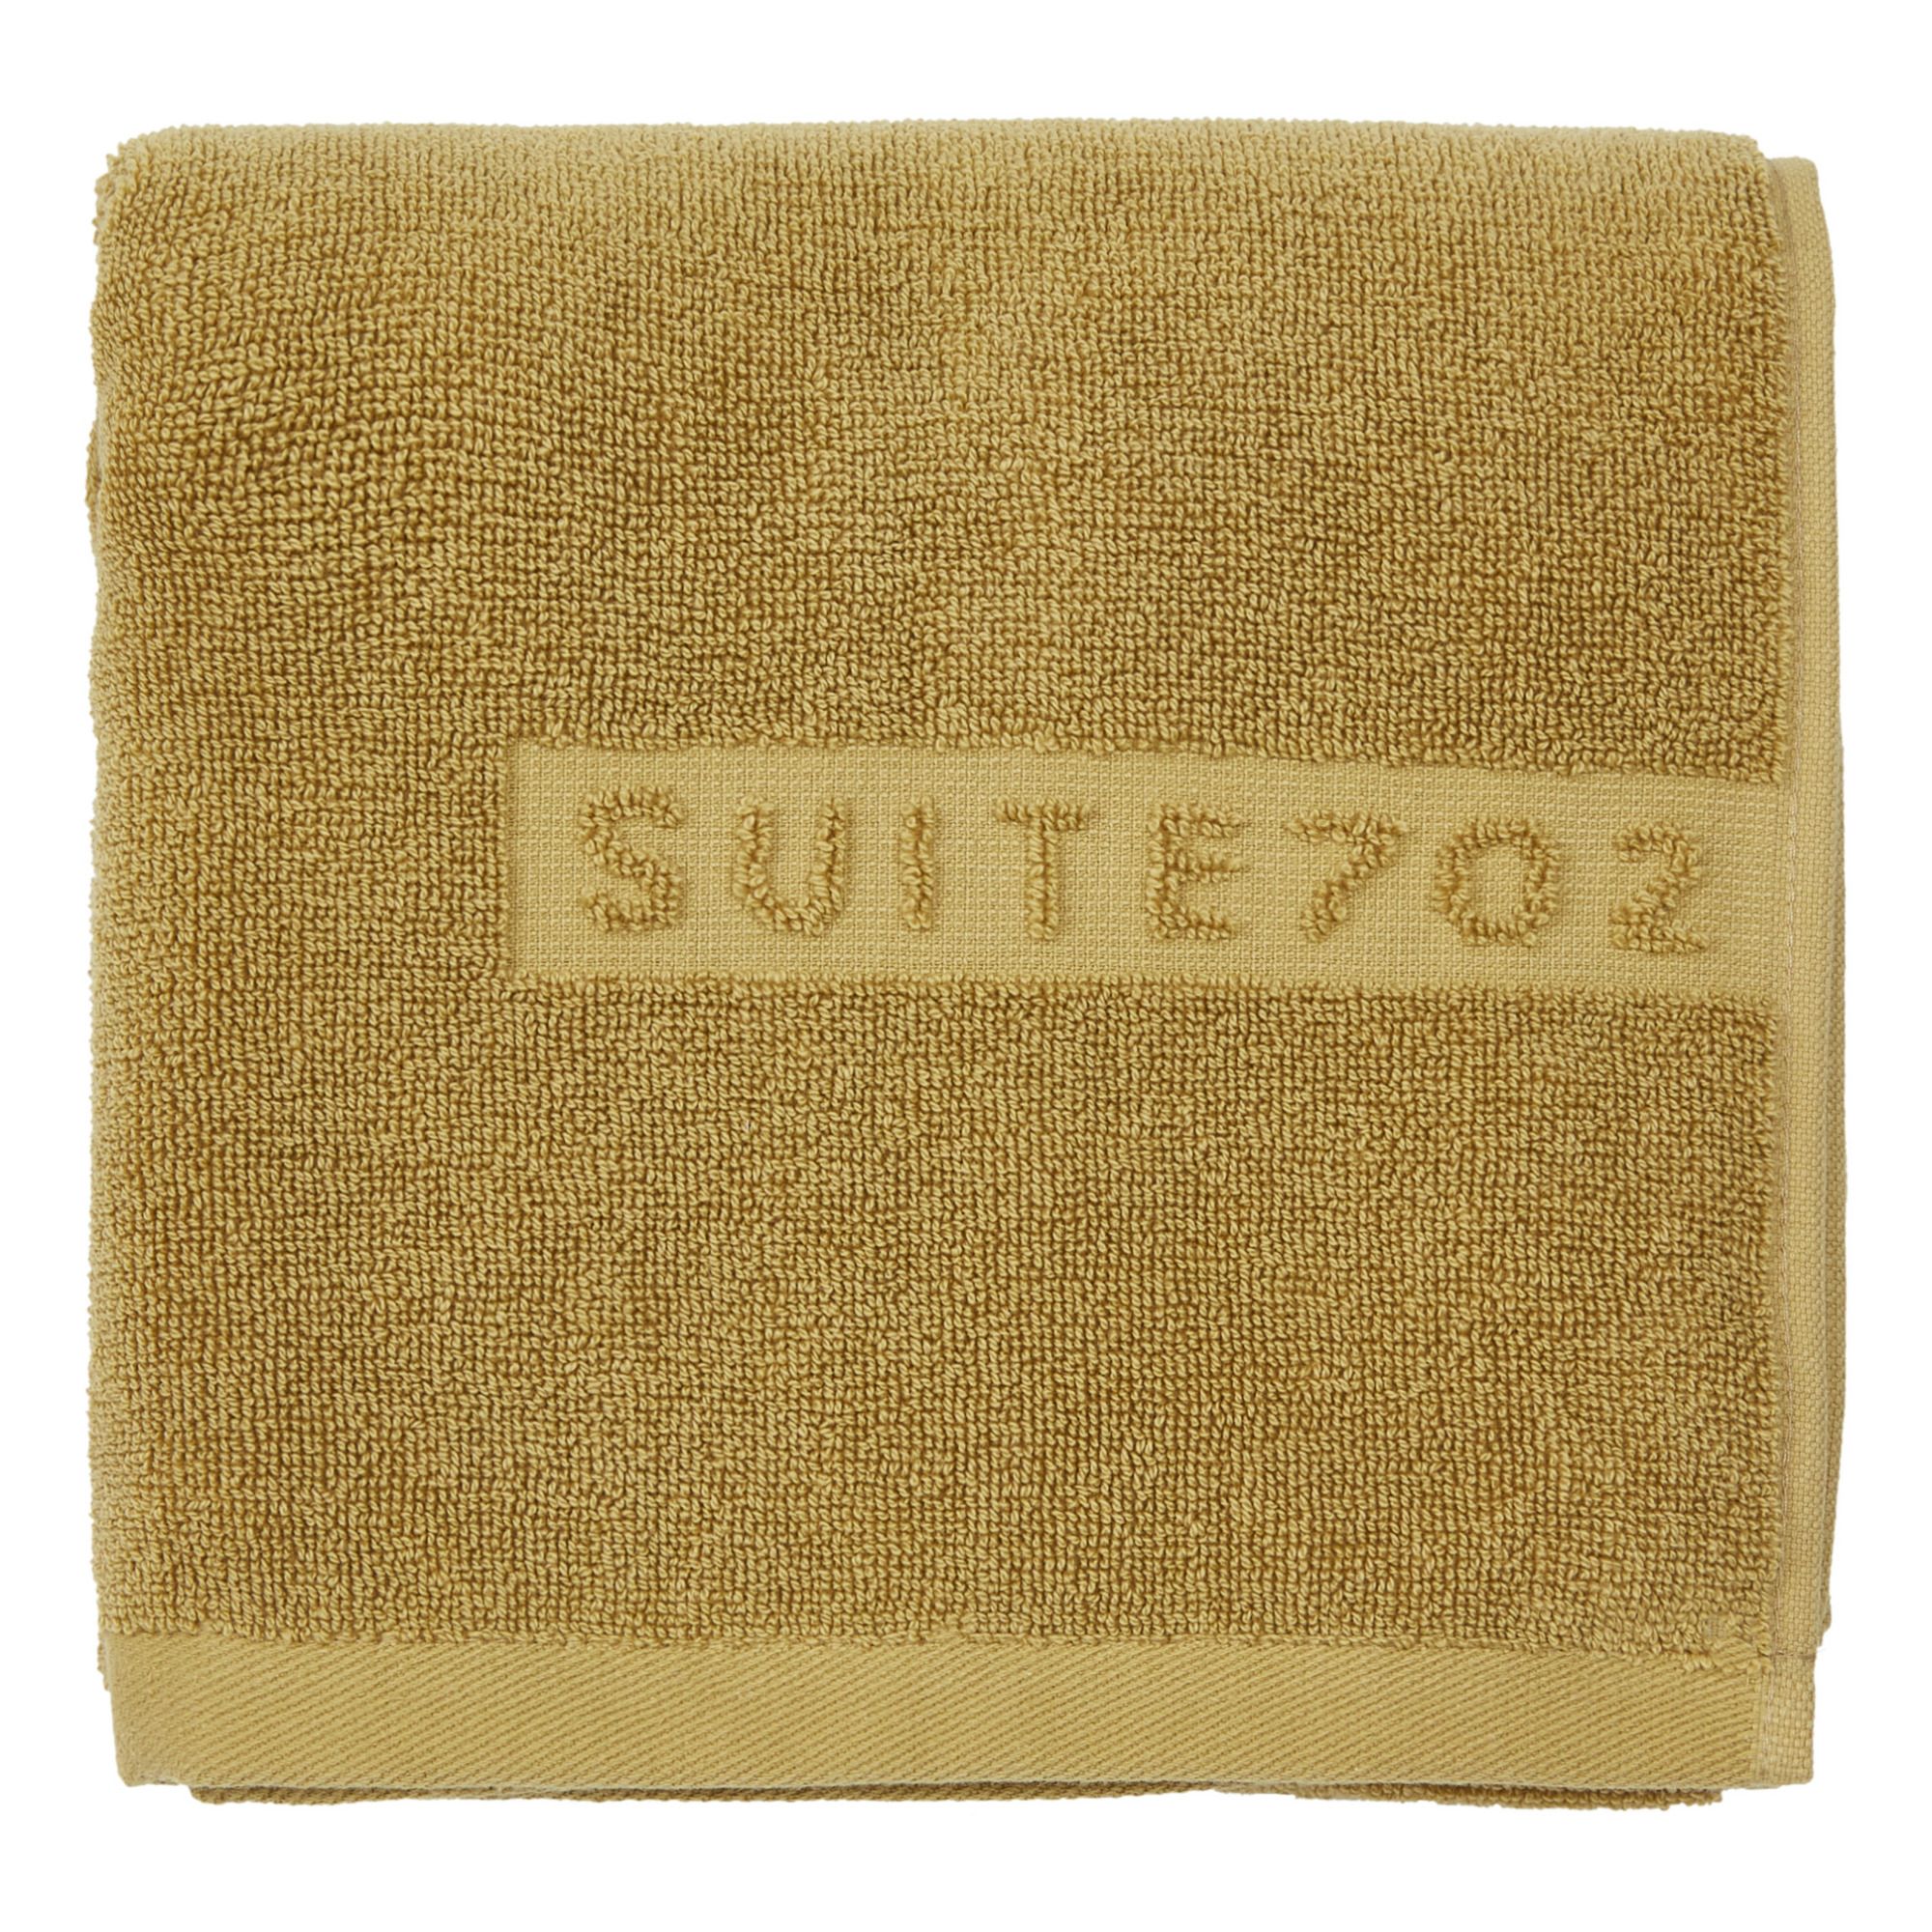 Suite 702 - Serviette de toilette en coton bio - Miel